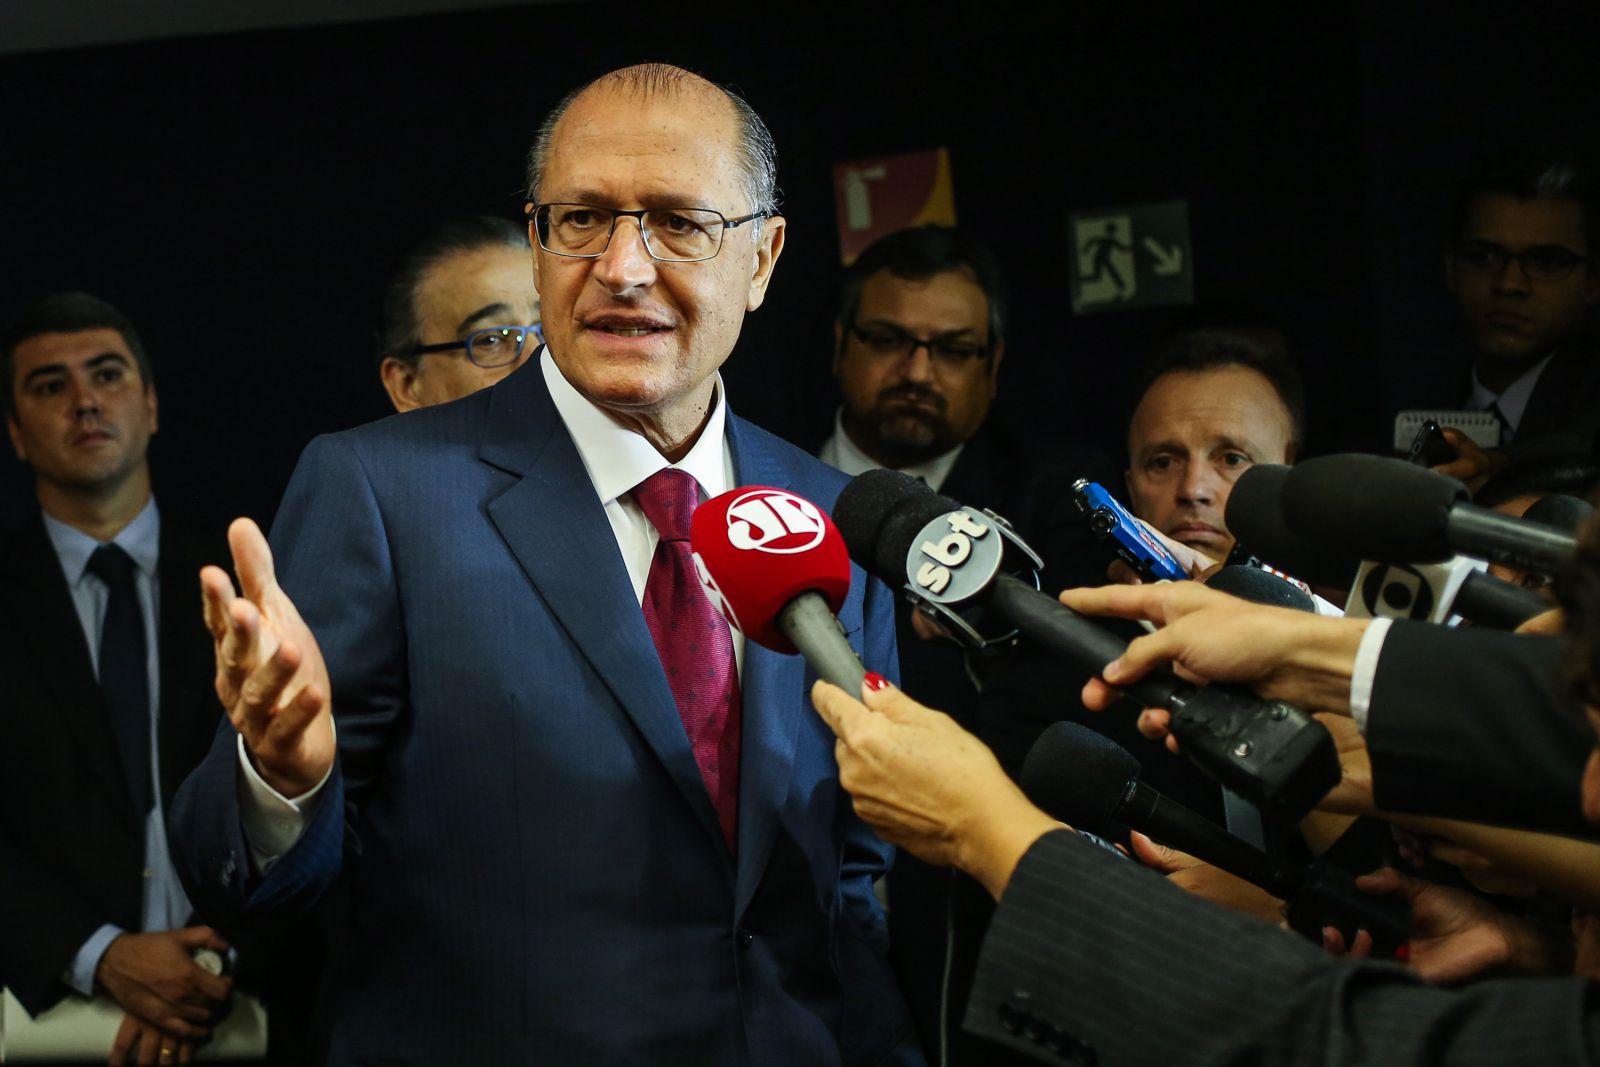 Governador de São Paulo, Geraldo Alckmin